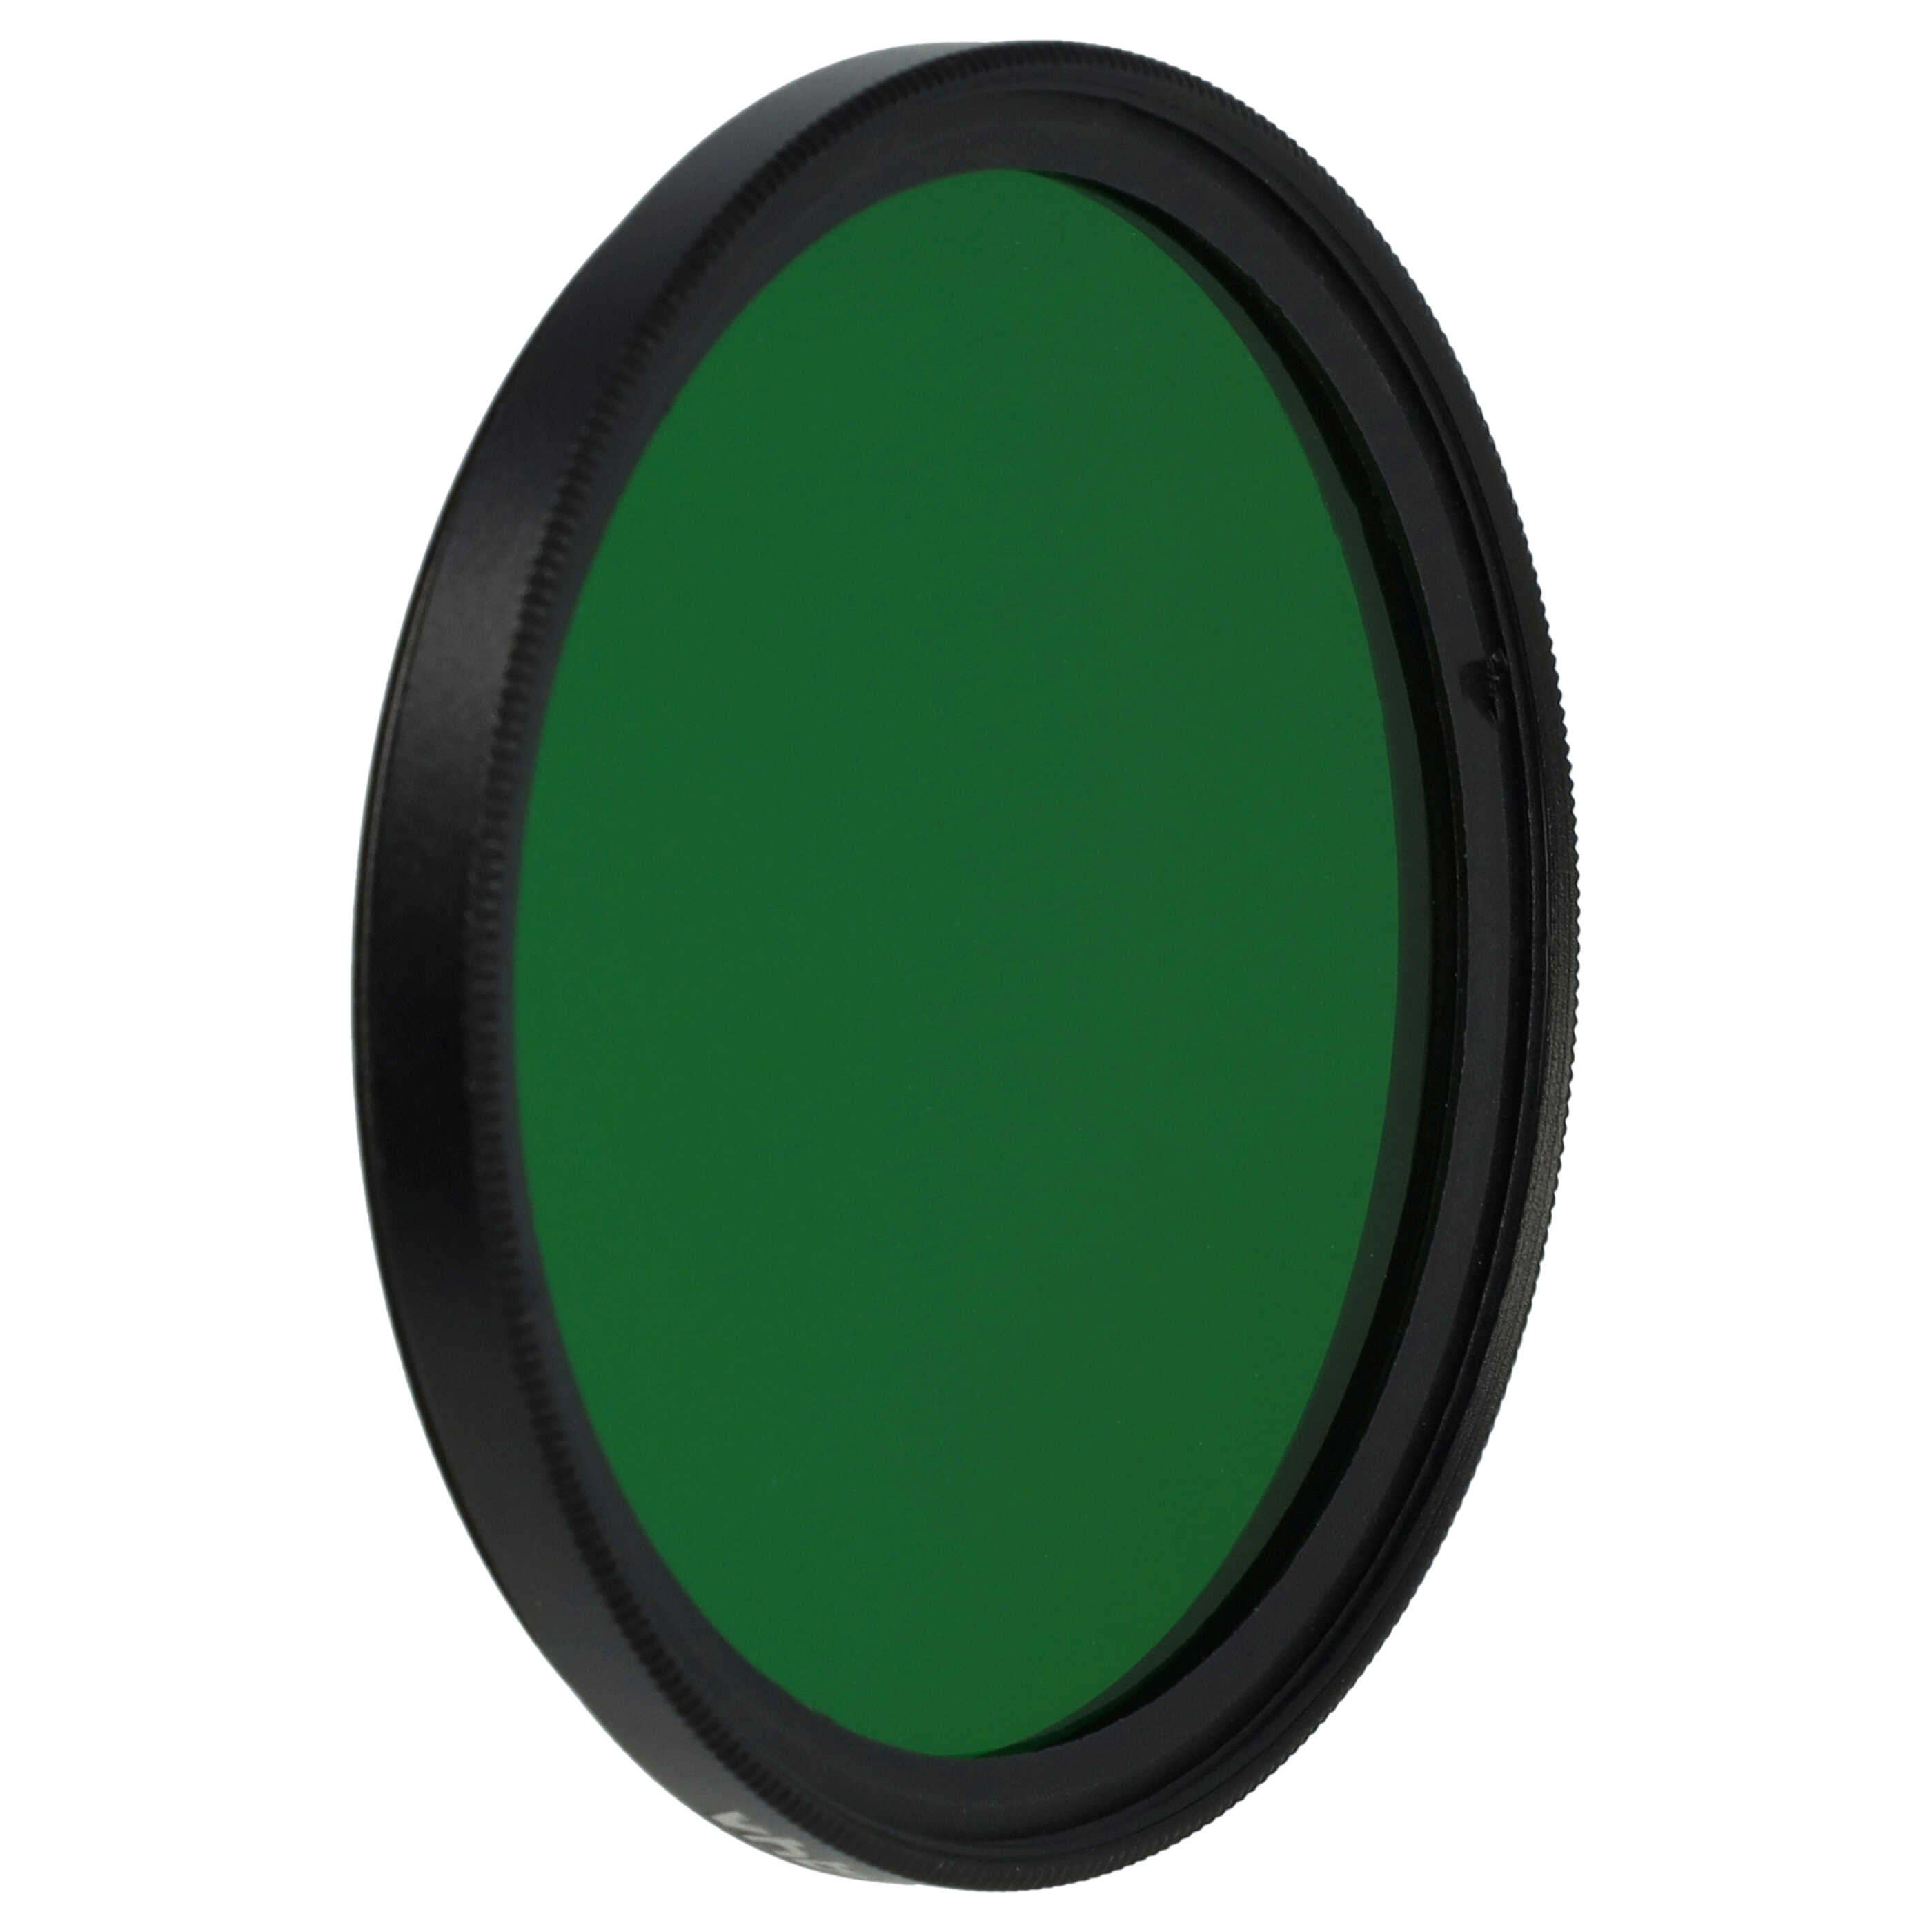 Filtre de couleur vert pour objectifs d'appareils photo de 55 mm - Filtre vert